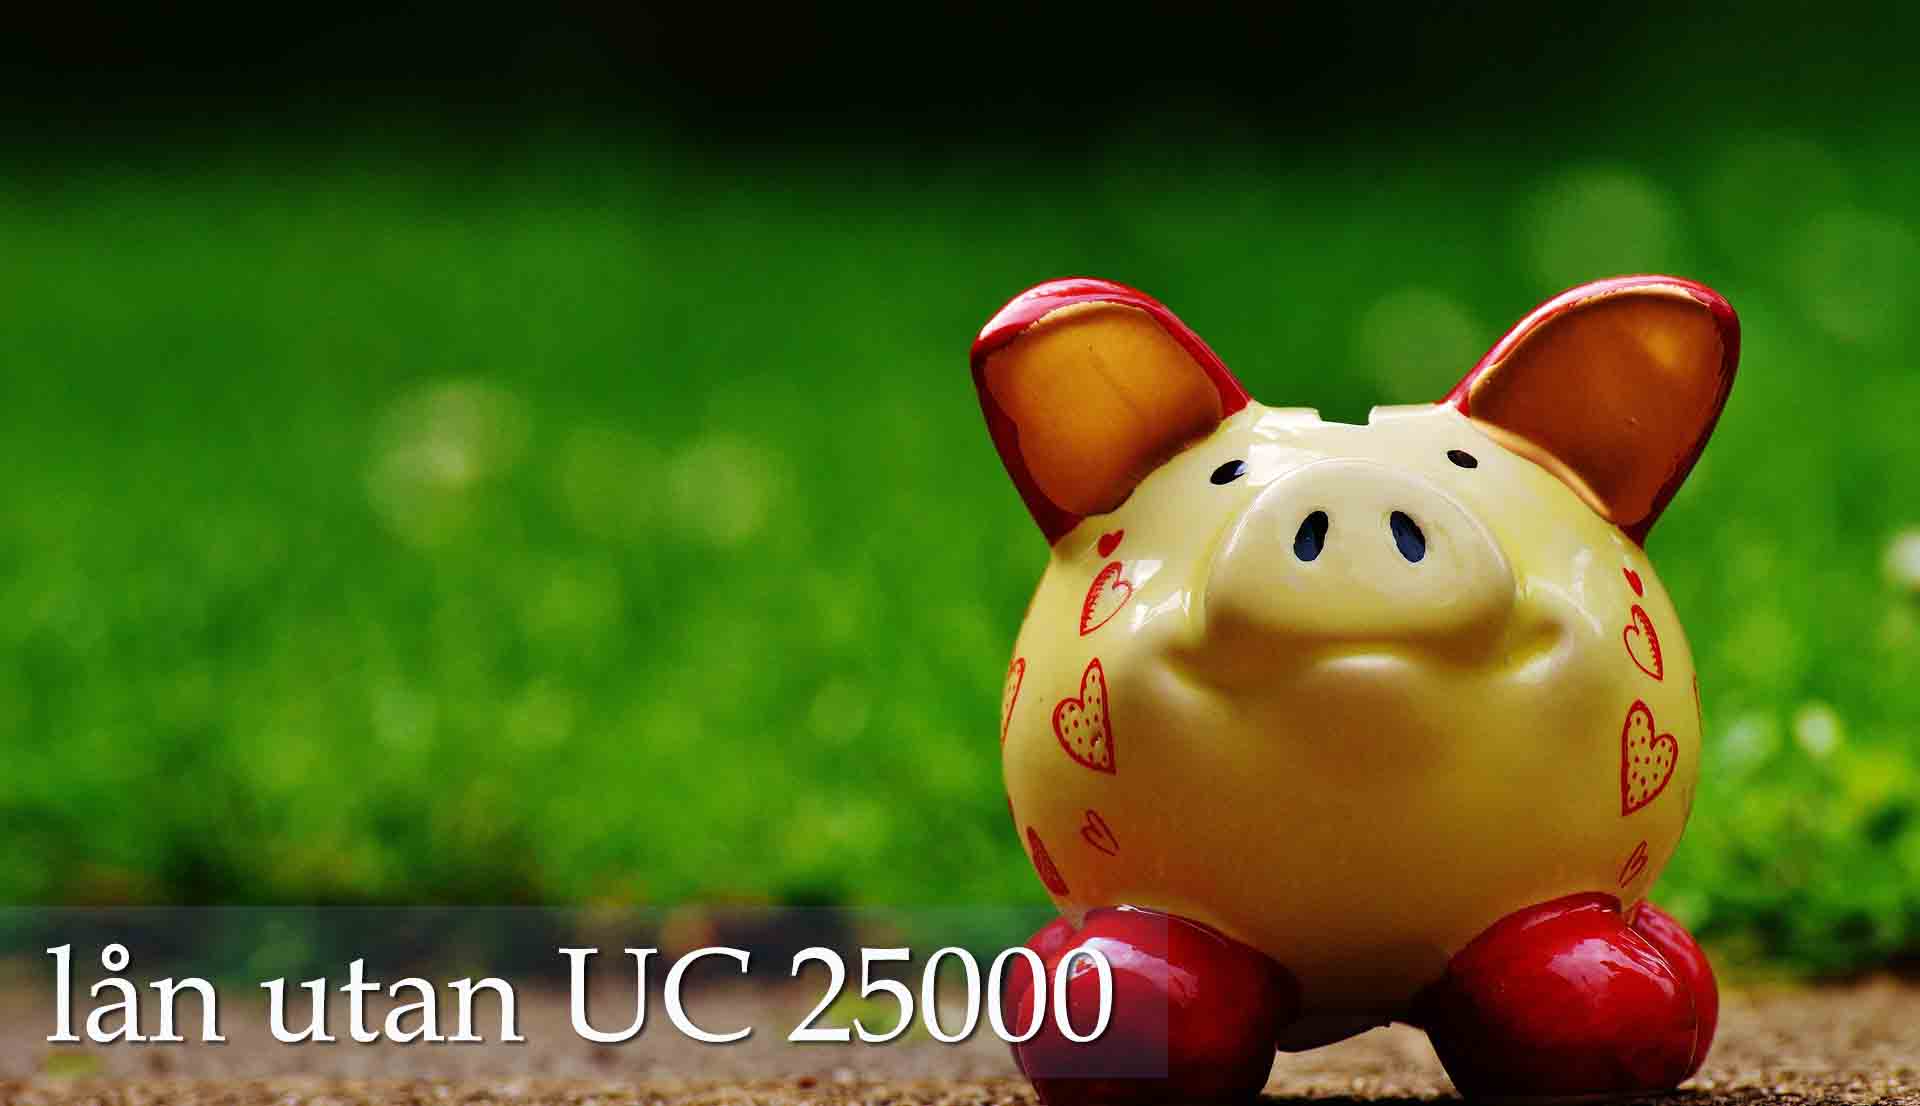 lån utan UC 25000